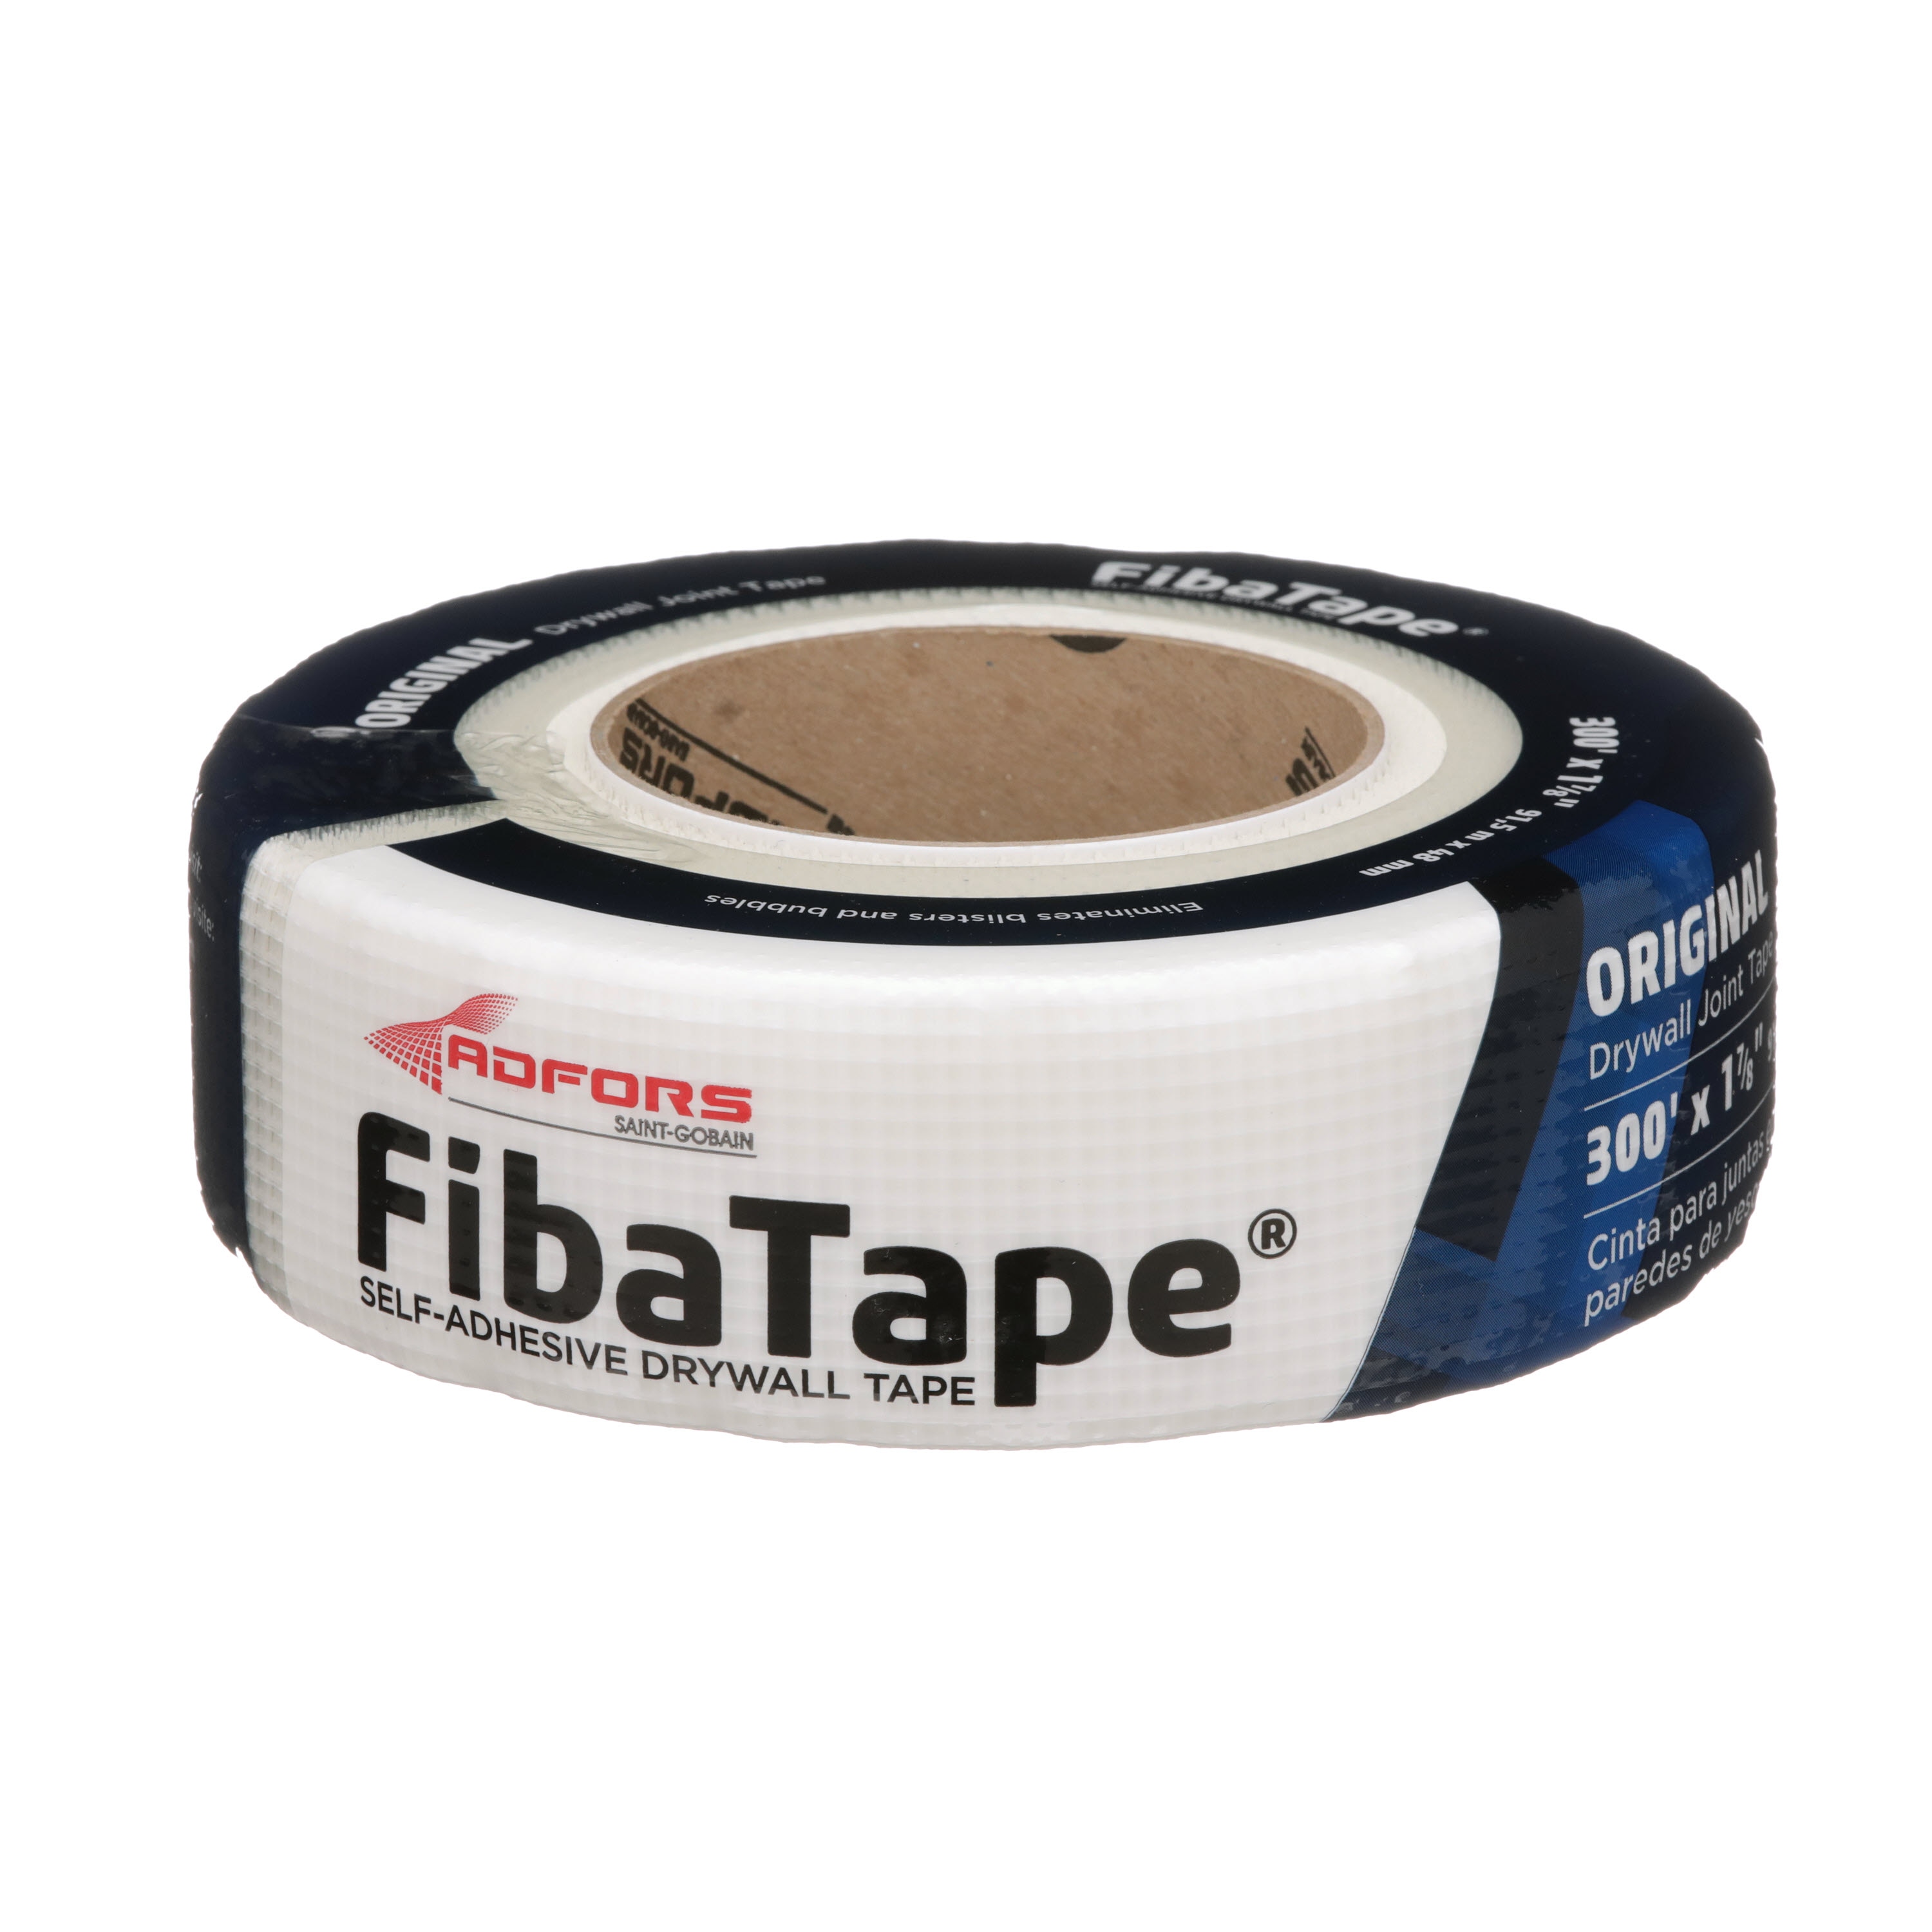 Straitflex tuff tape 0,2 kg - porównaj ceny 